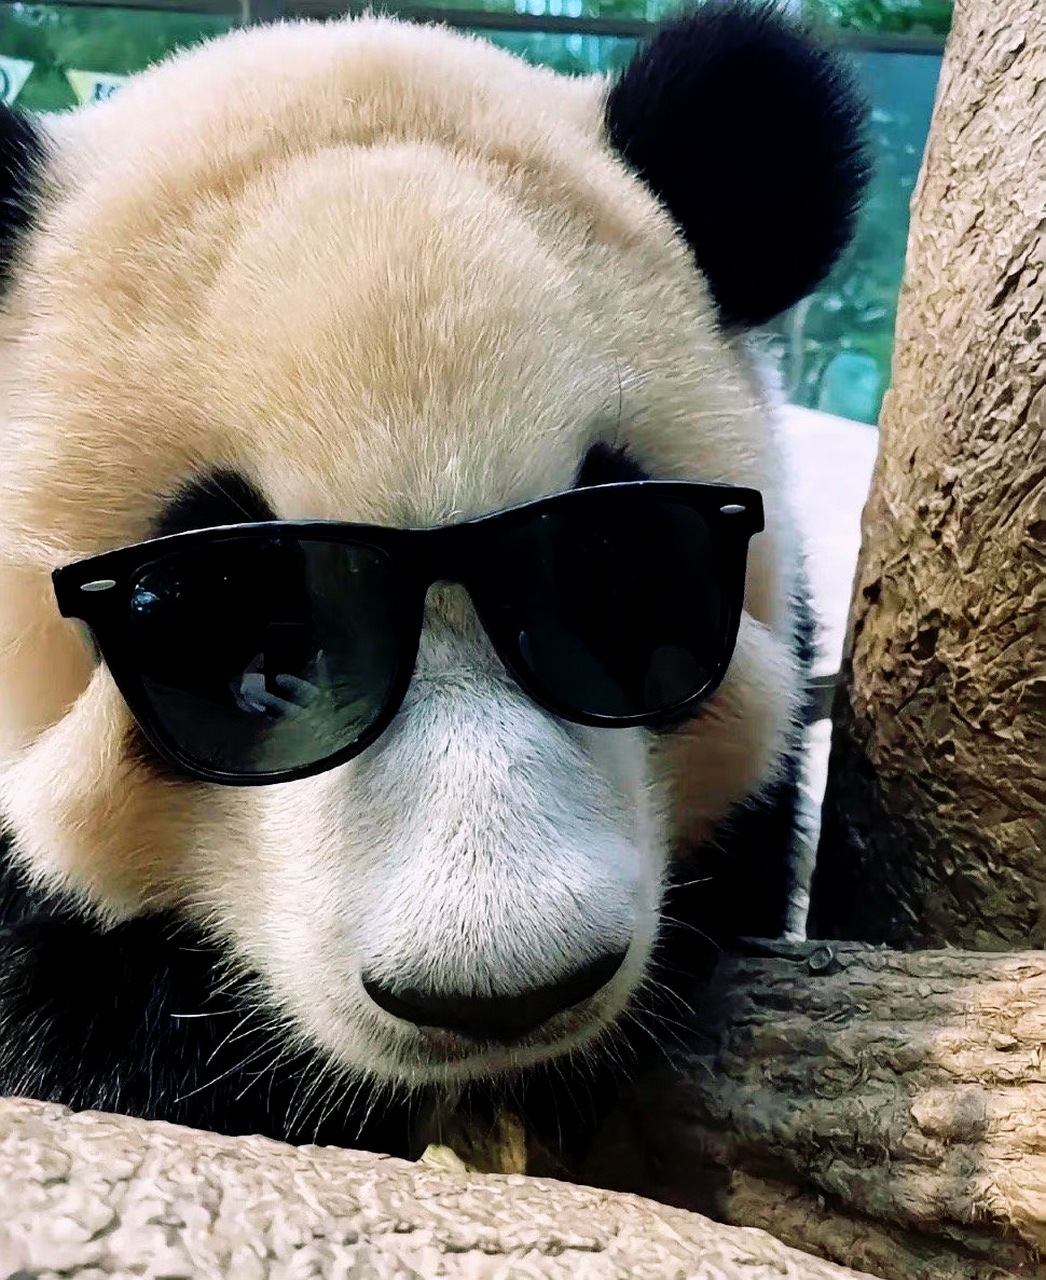 熊猫戴墨镜表情包图片